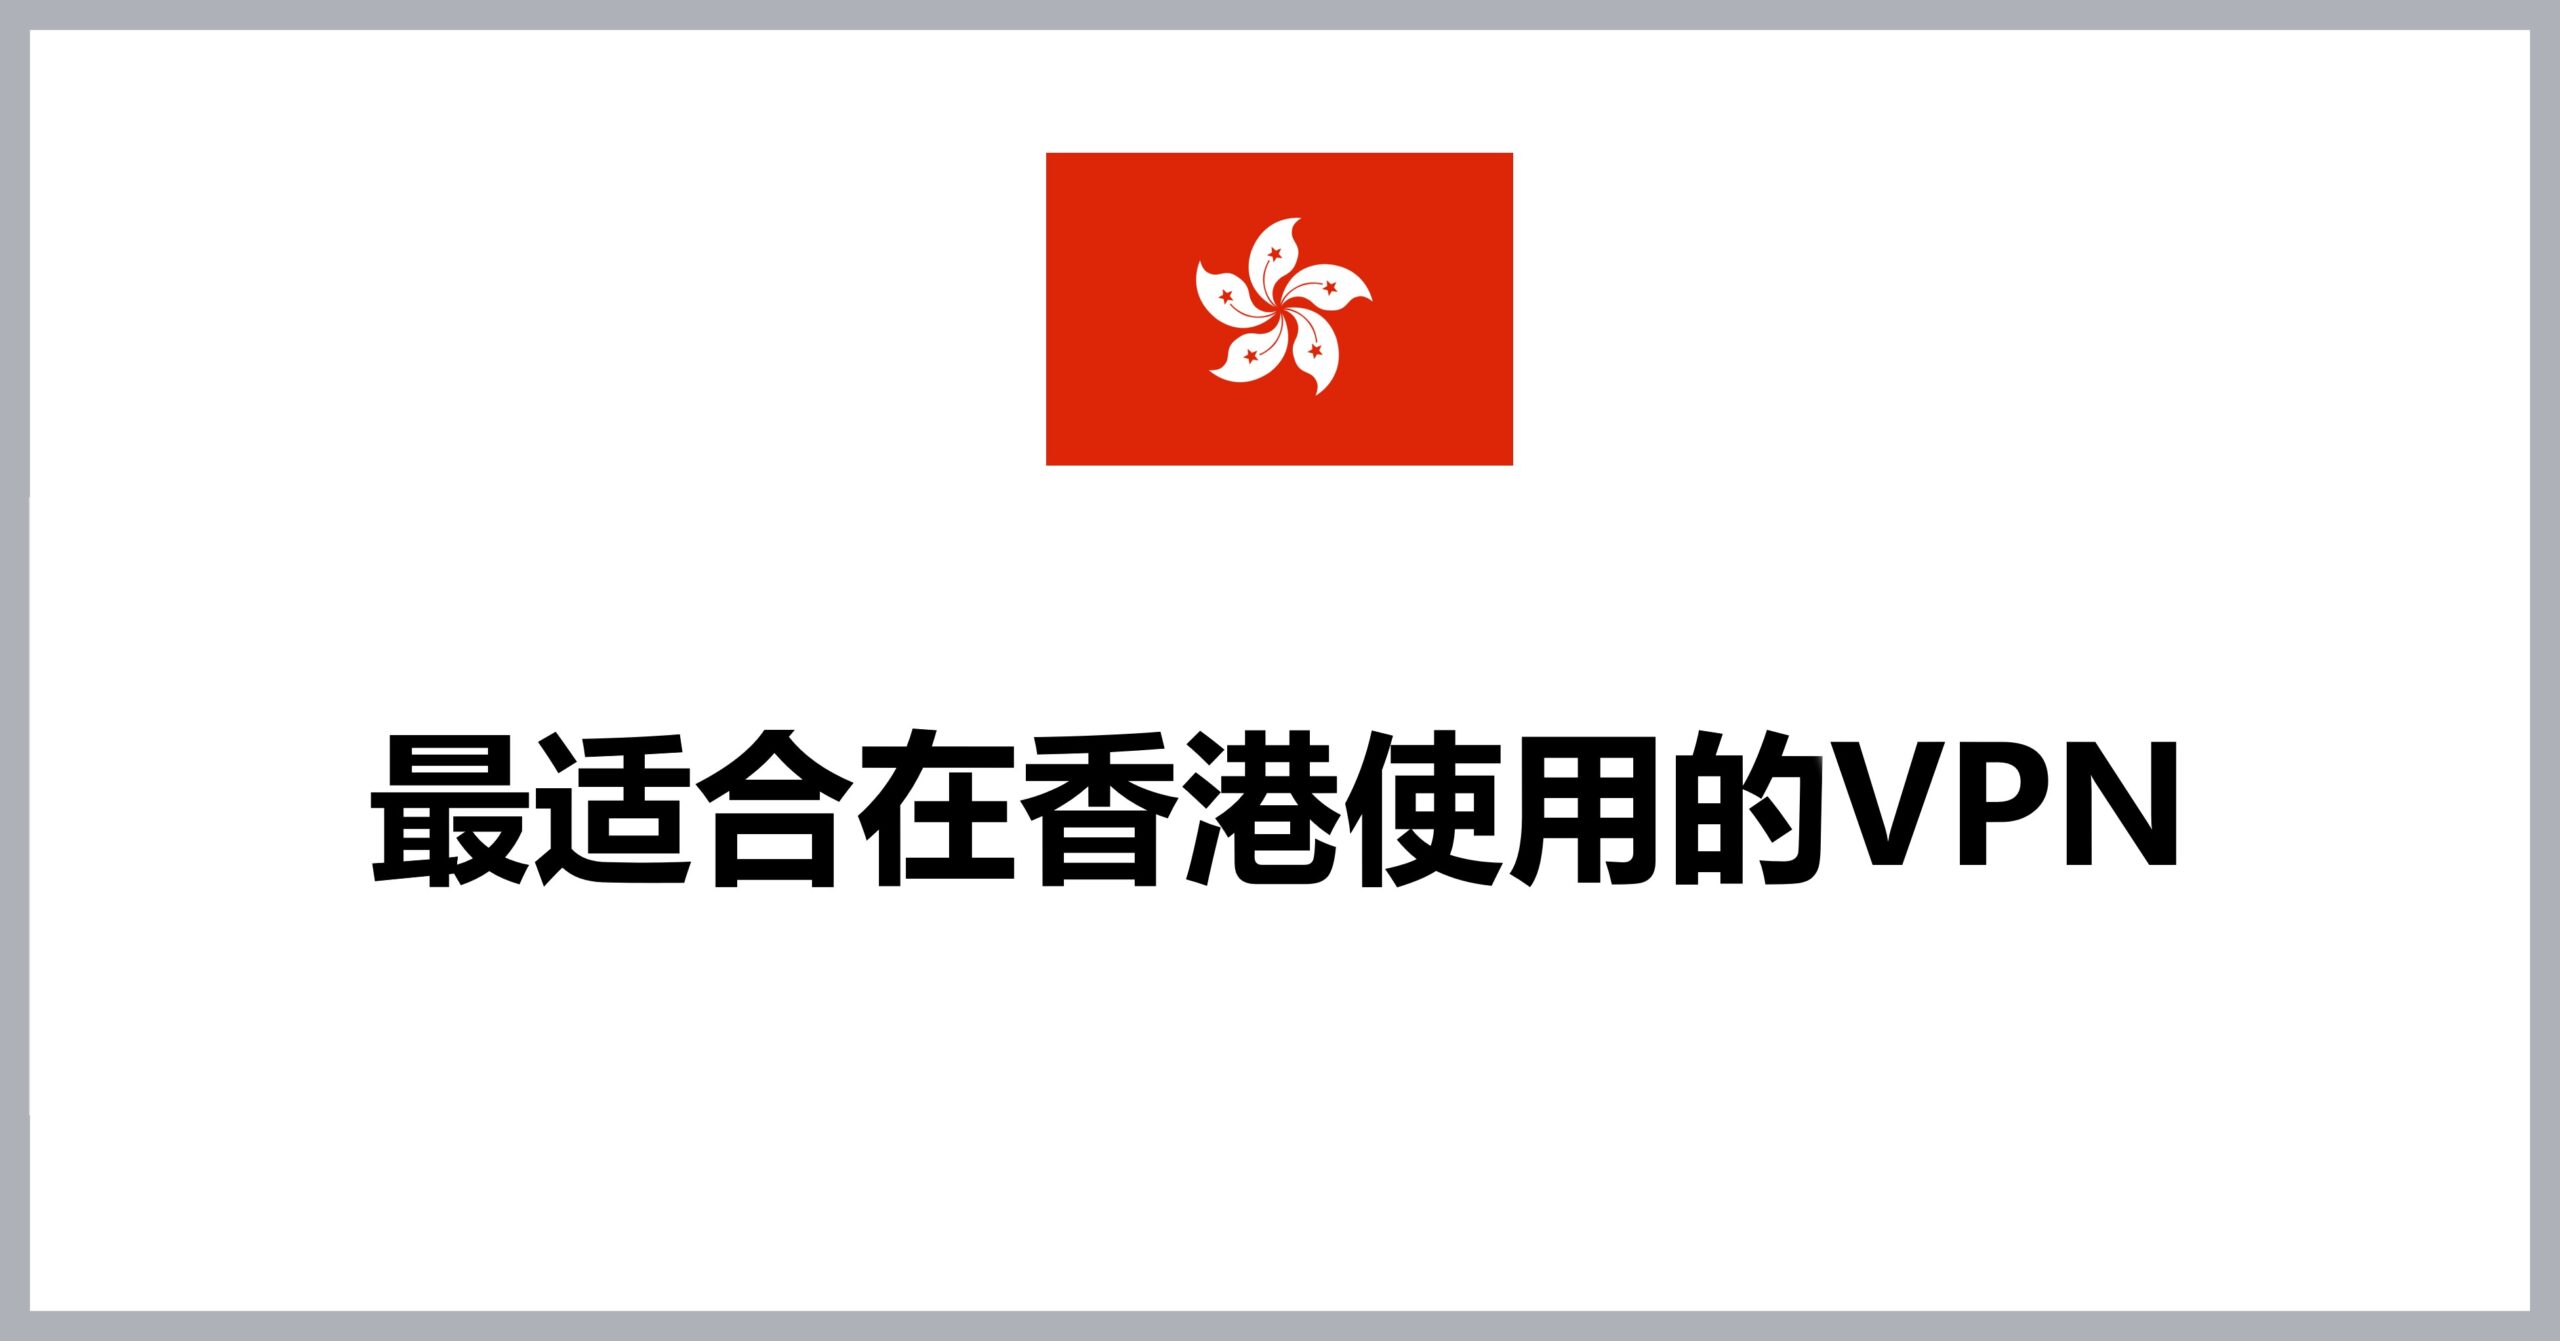 Best VPNs for Hongkong